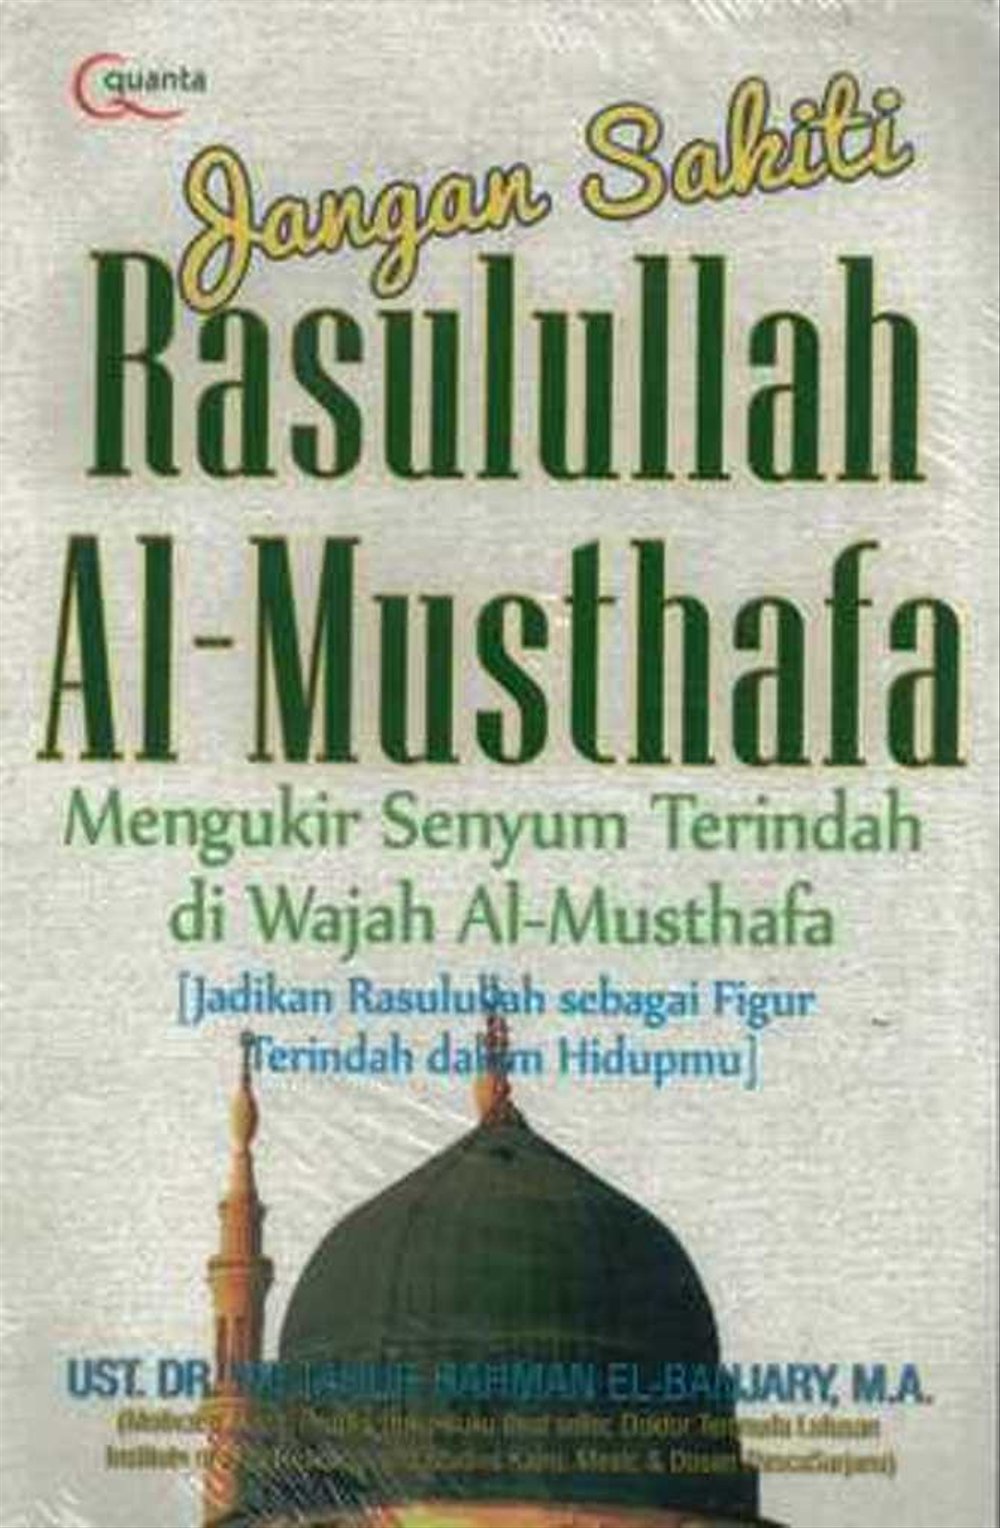 Dengan Sakit Rasulullah Al- Musthafa